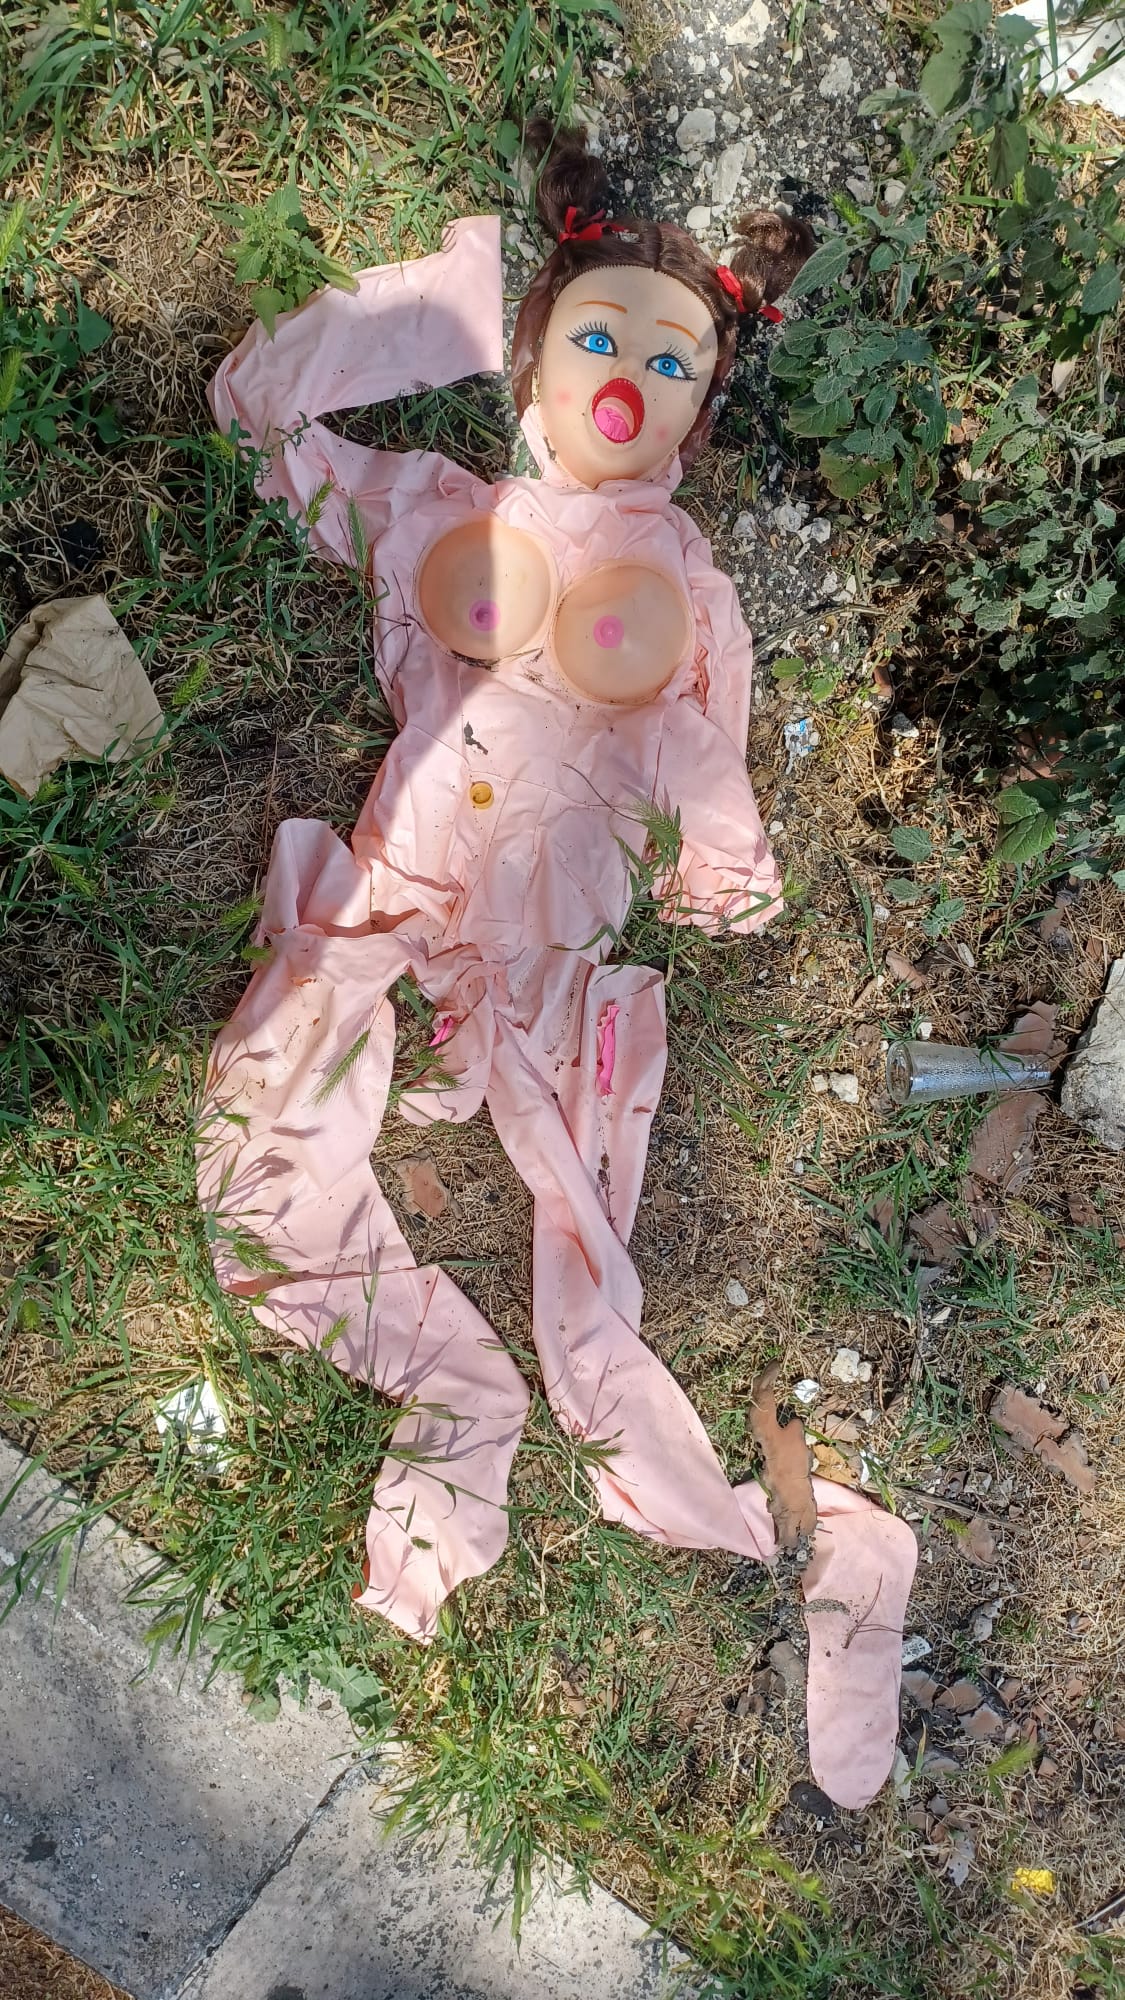 Garbatella: trovata un'altra bambola gonfiabile a terra